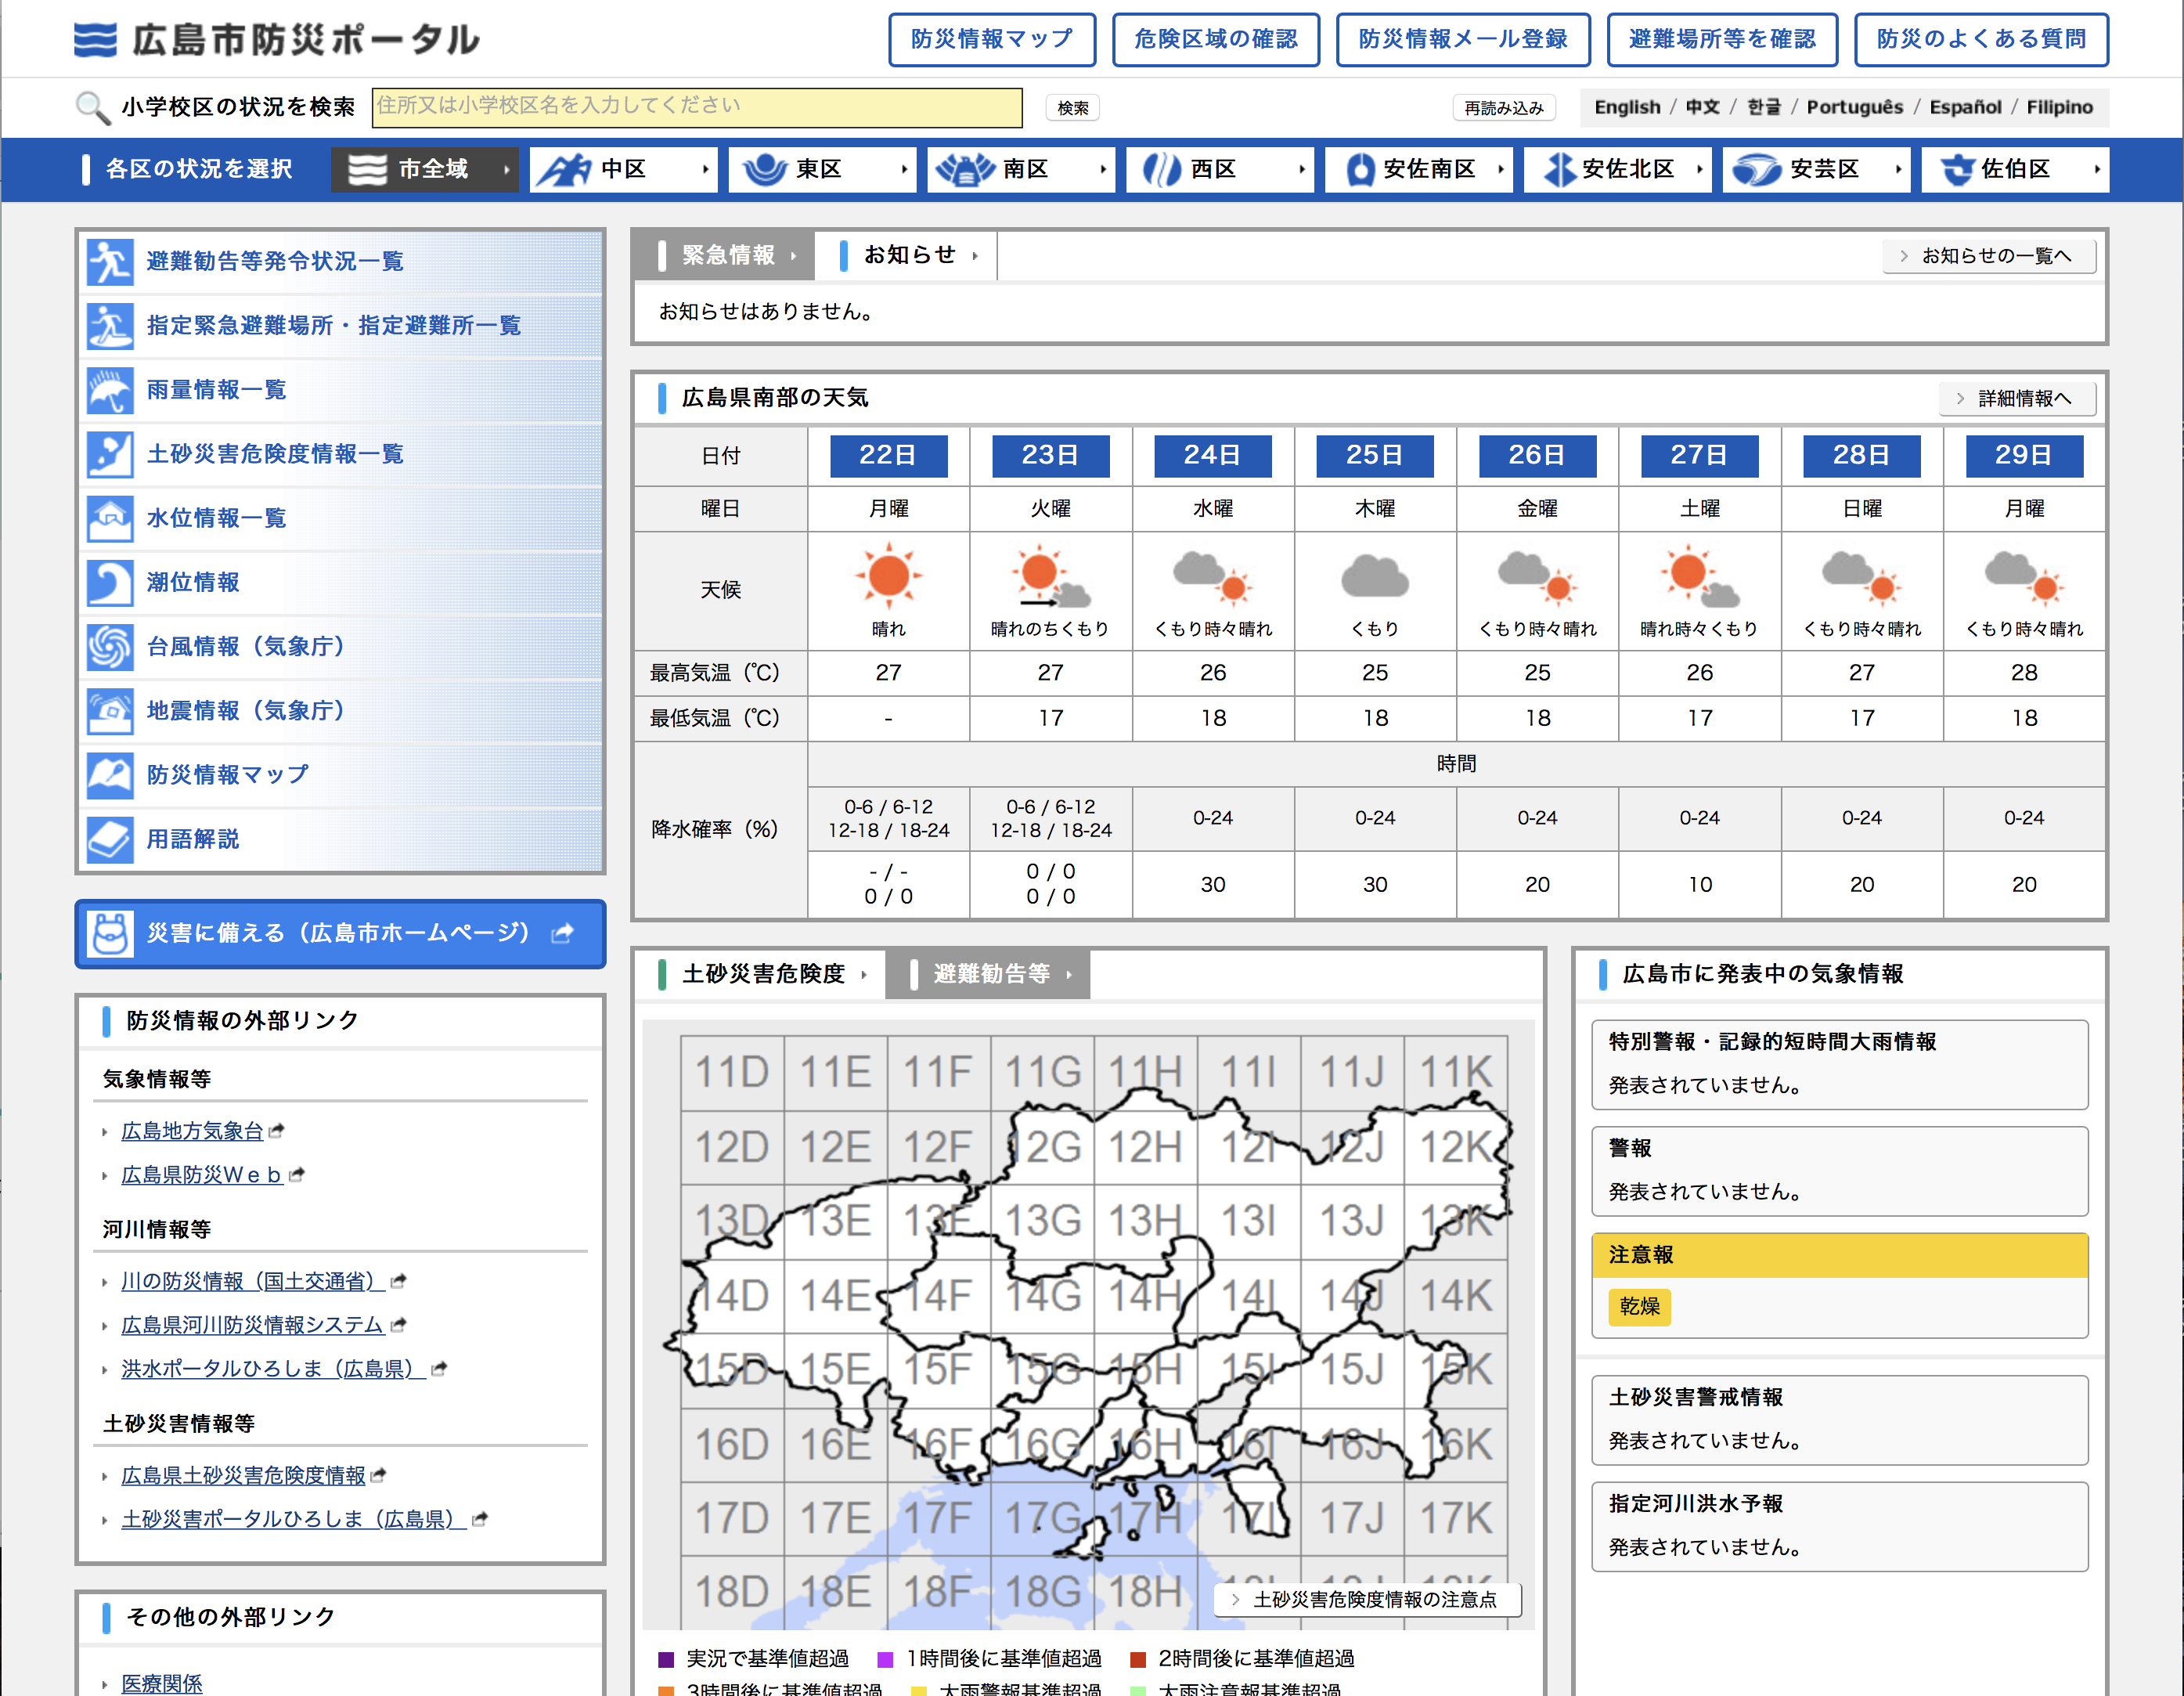 「広島市防災ポータル」（http://www.bousai.city.hiroshima.lg.jp/）では、市全域や区単位など、エリア別にさまざまな情報が確認できる。